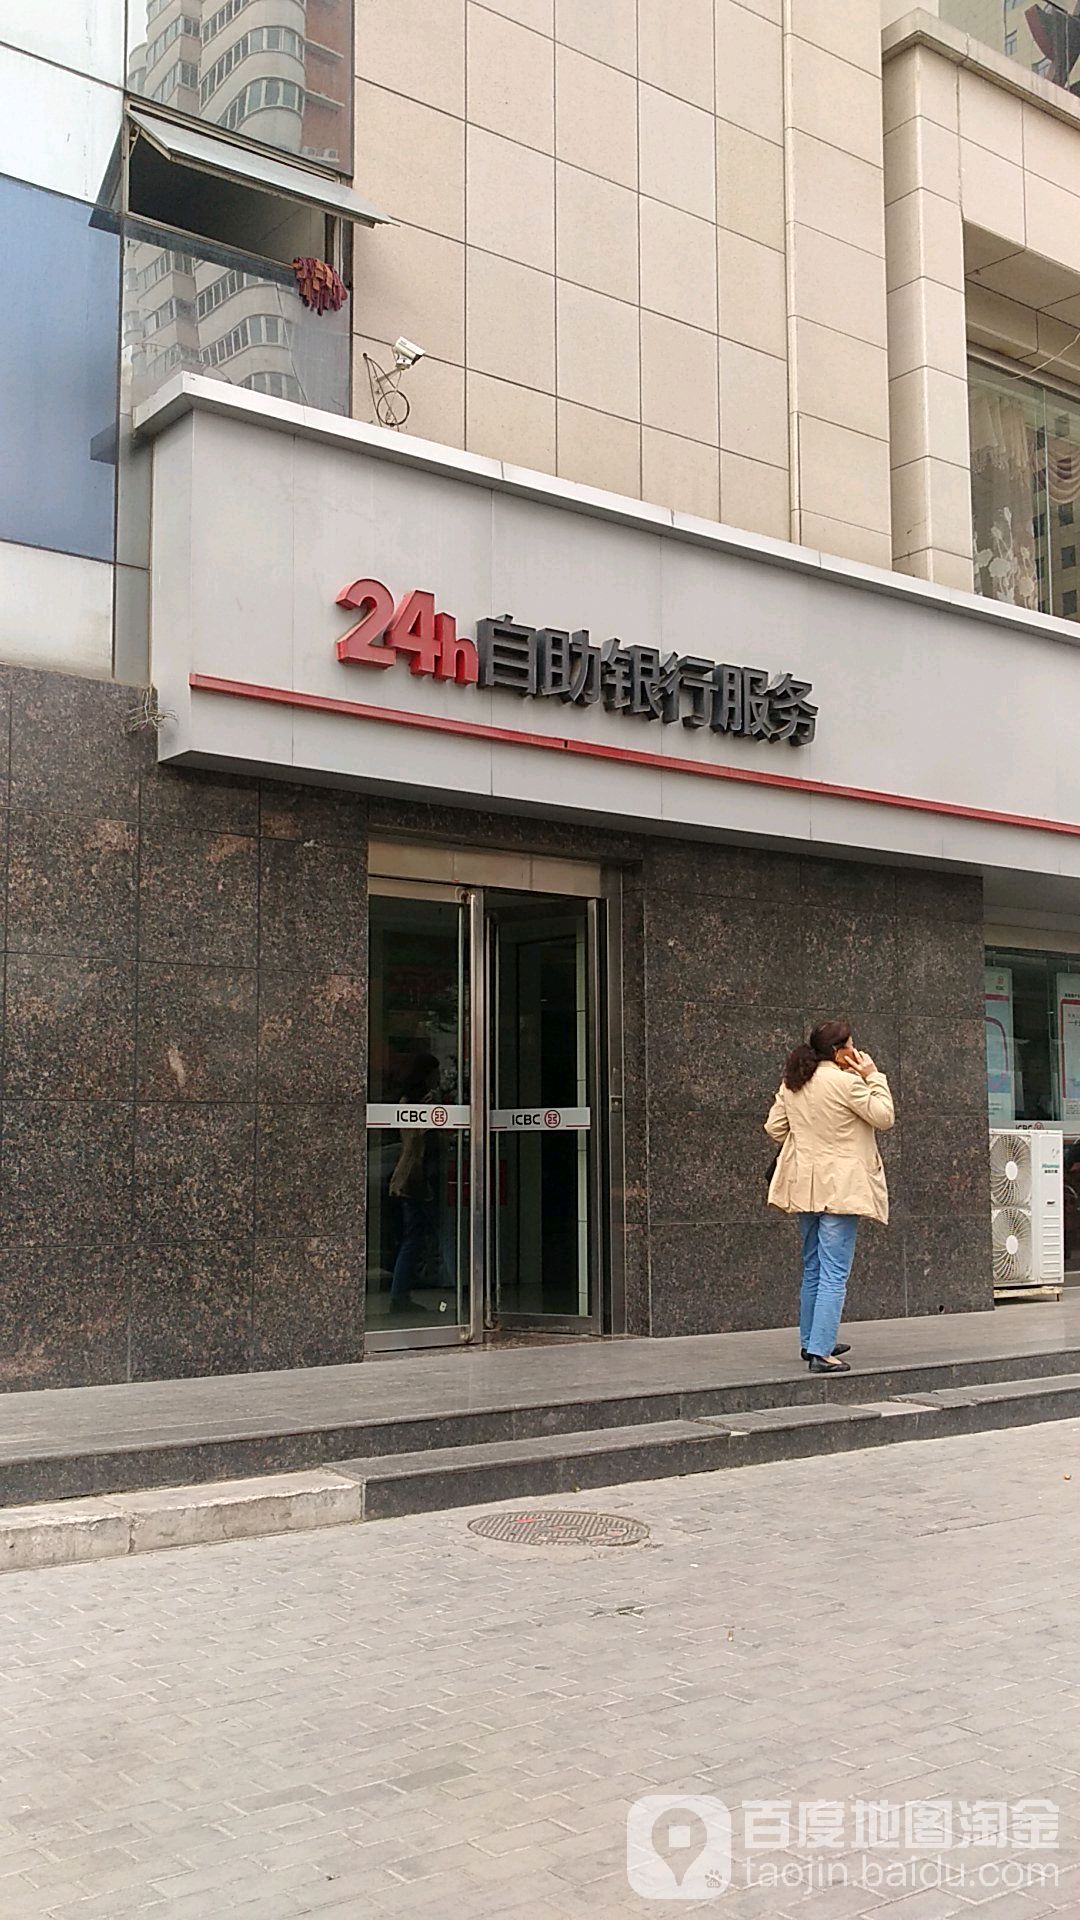 中國工商銀行24小時自助銀行服務